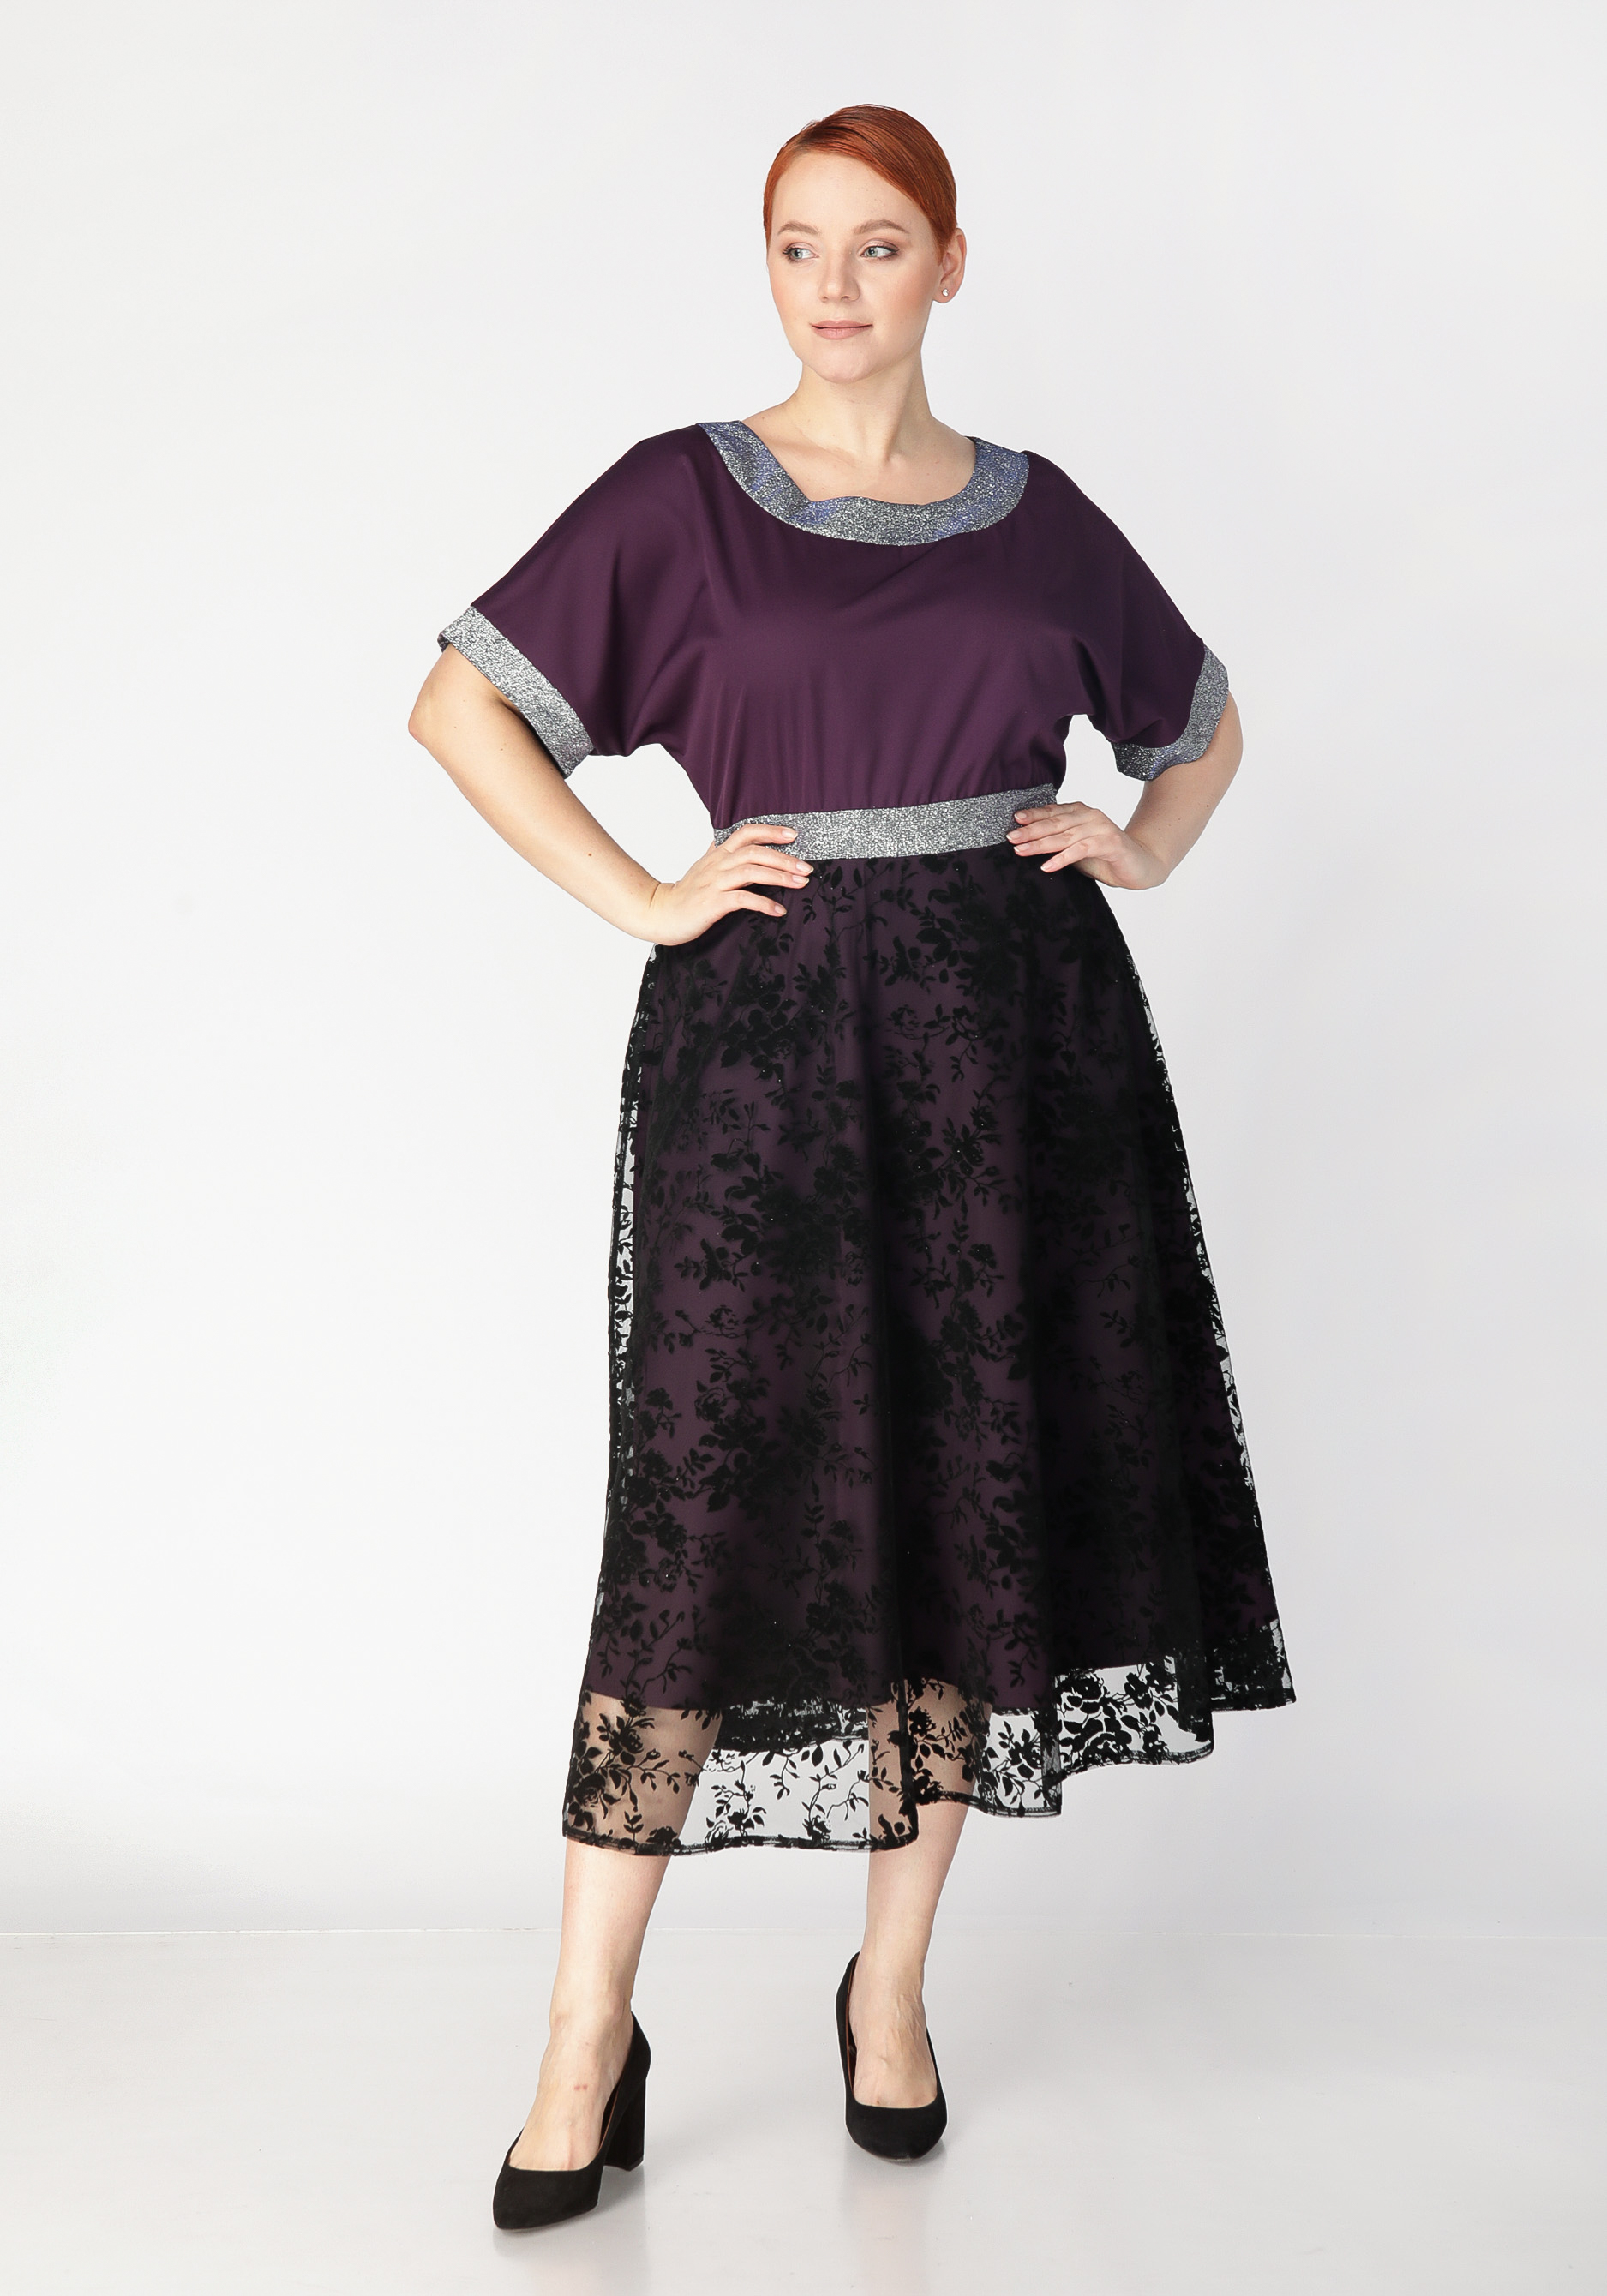 Платье с объемным принтом Mio Imperatrice, цвет баклажановый, размер 54 - фото 1